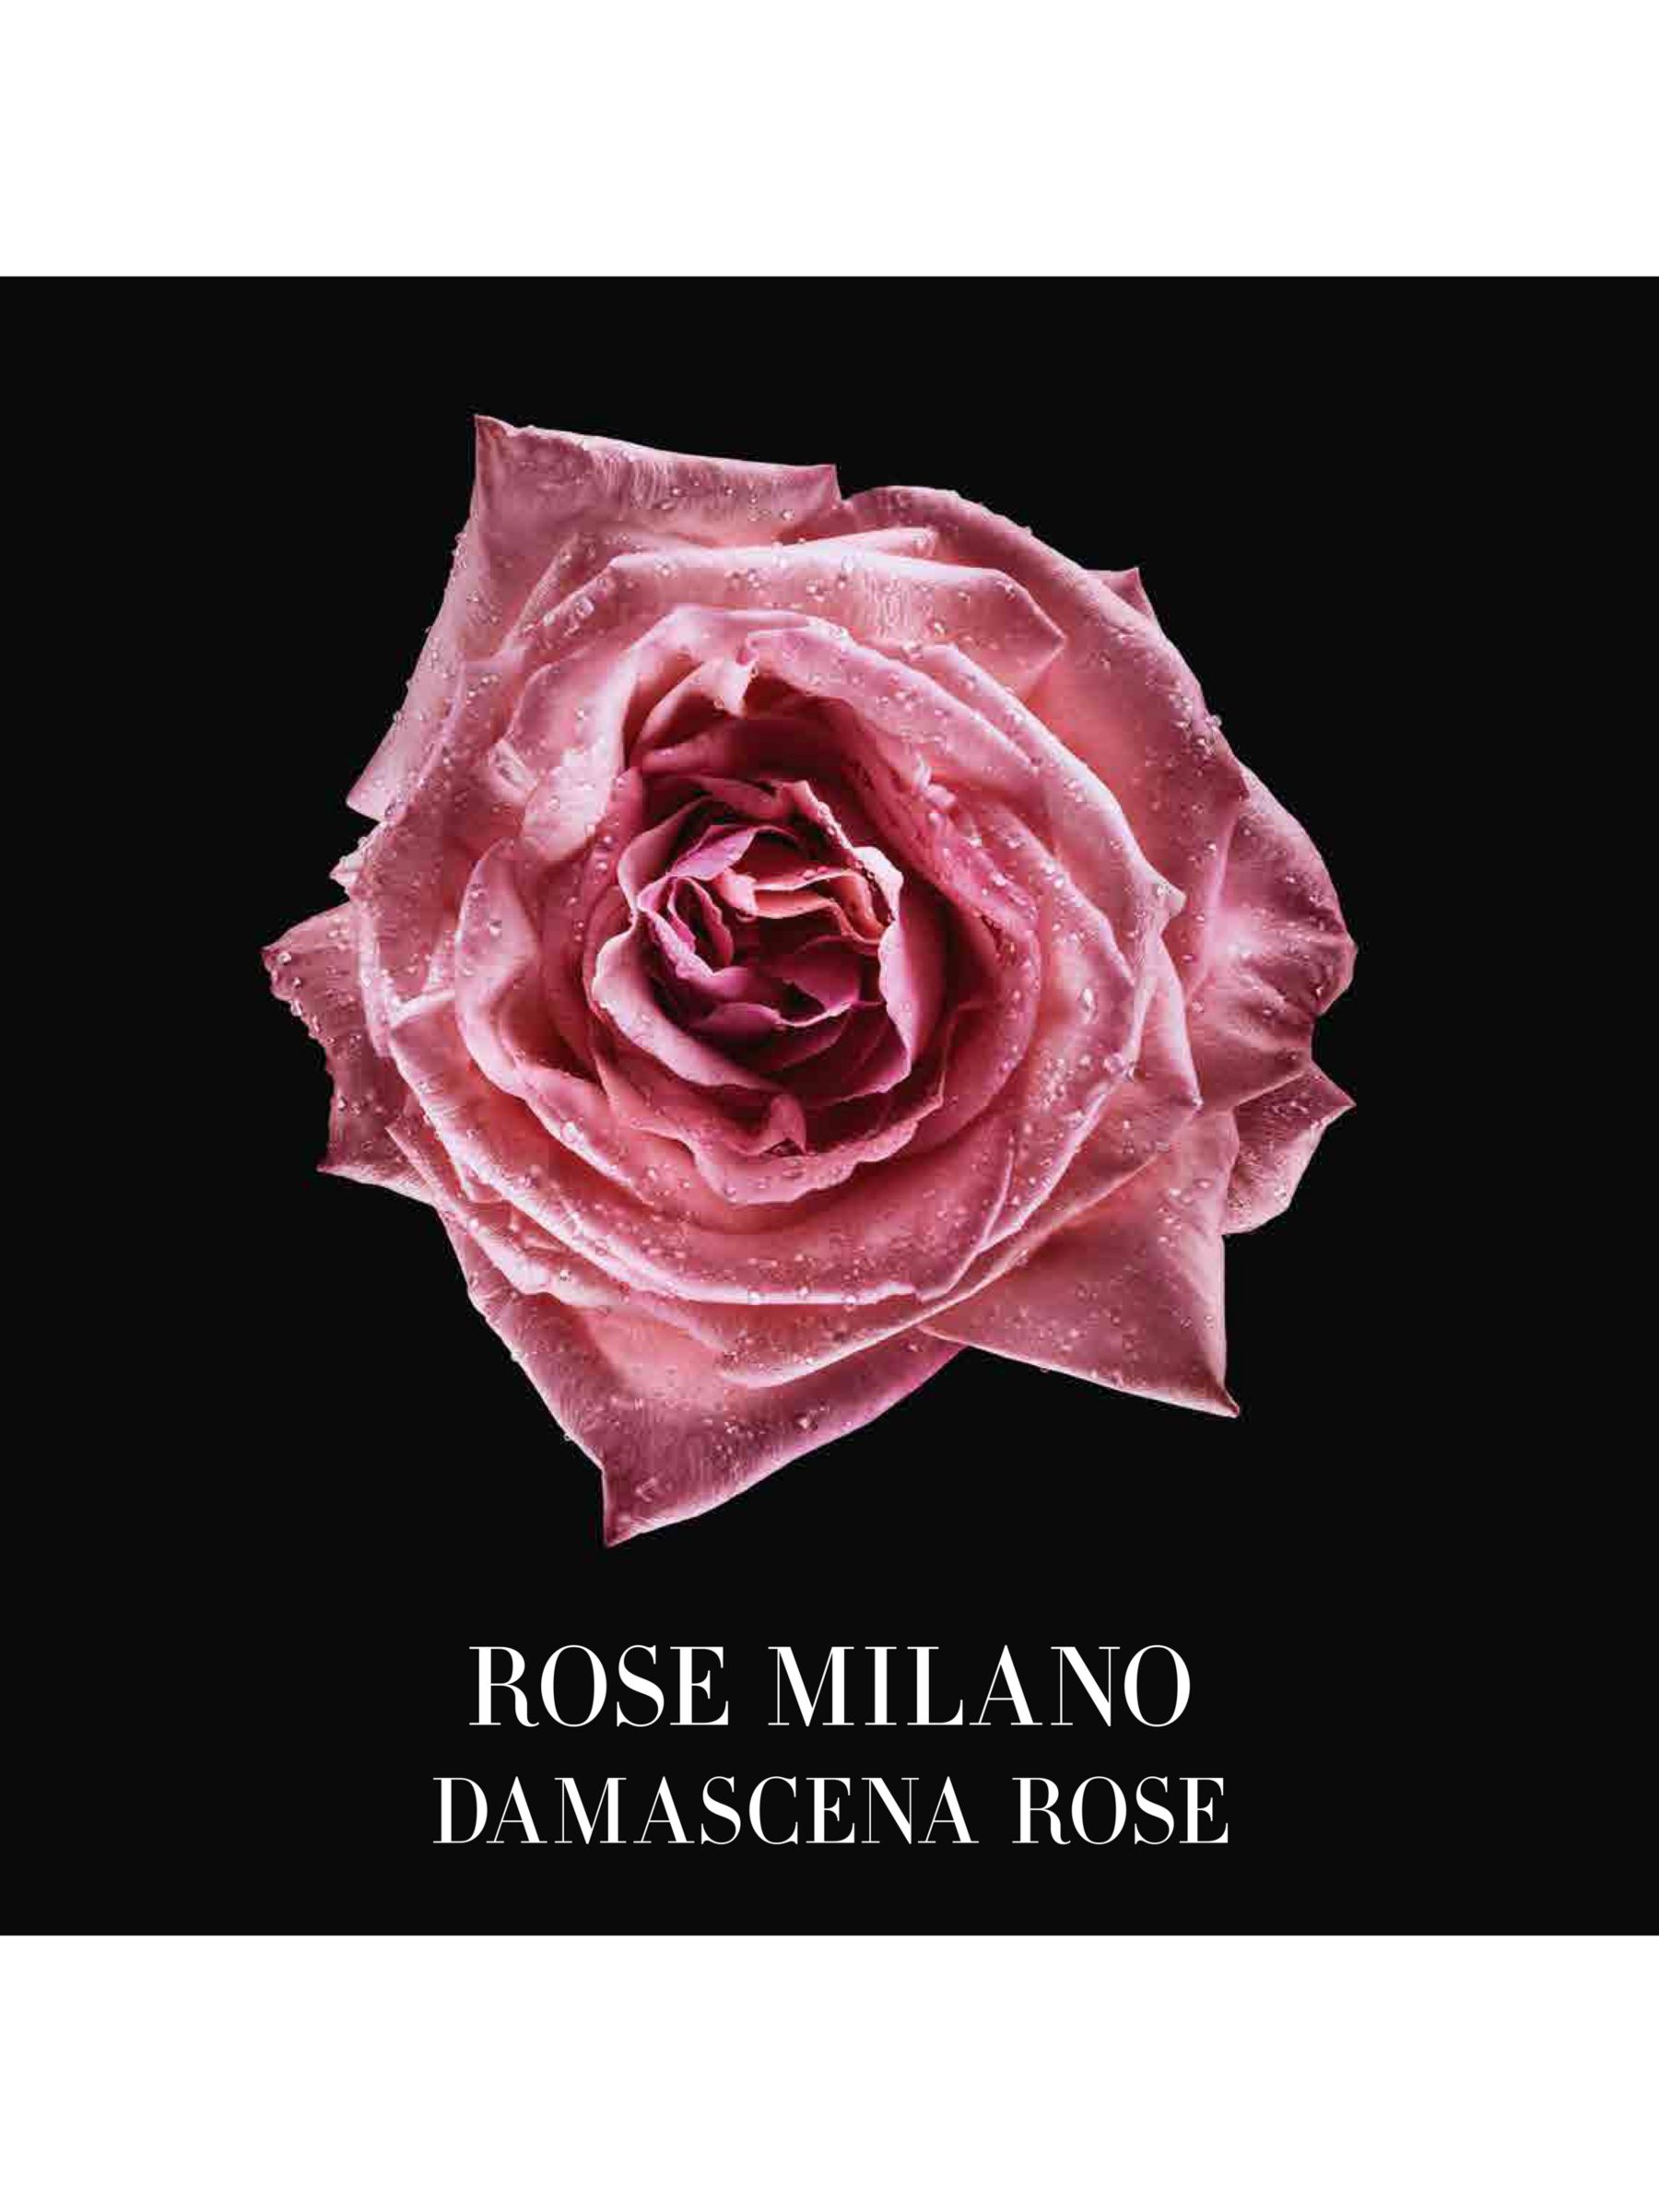 Giorgio Armani / Privé Les Eaux Rose Milano Eau de Toilette, 50ml 3